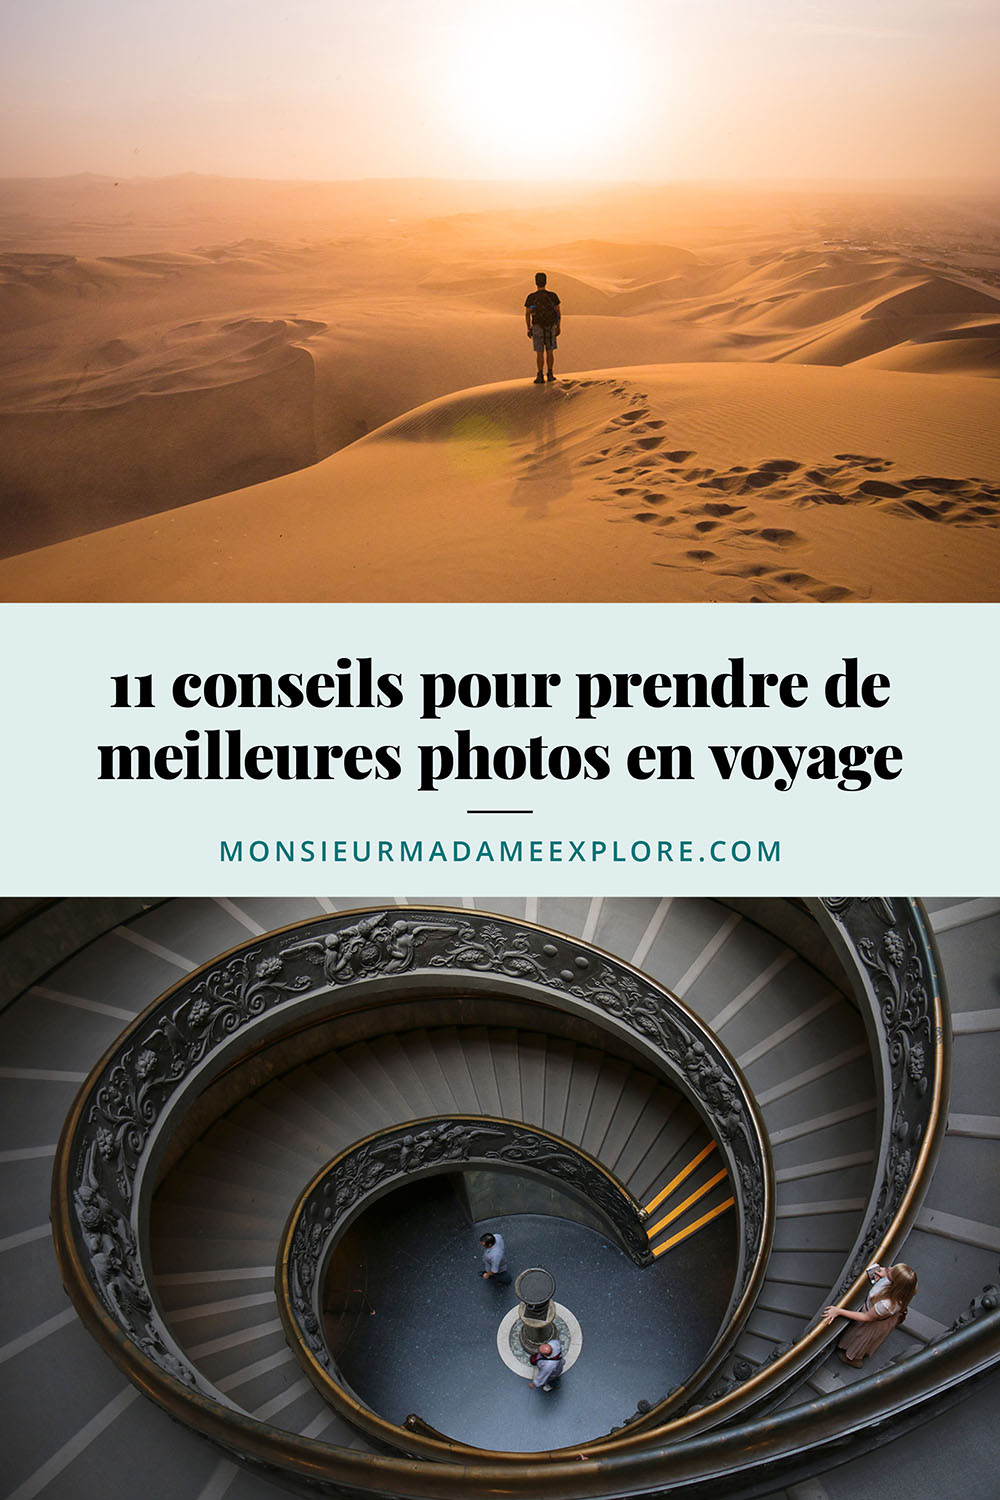 11 conseils pour prendre de meilleures photos en voyage, Monsieur+Madame Explore, Blogue de voyage / 11 tips for taking better photos while traveling